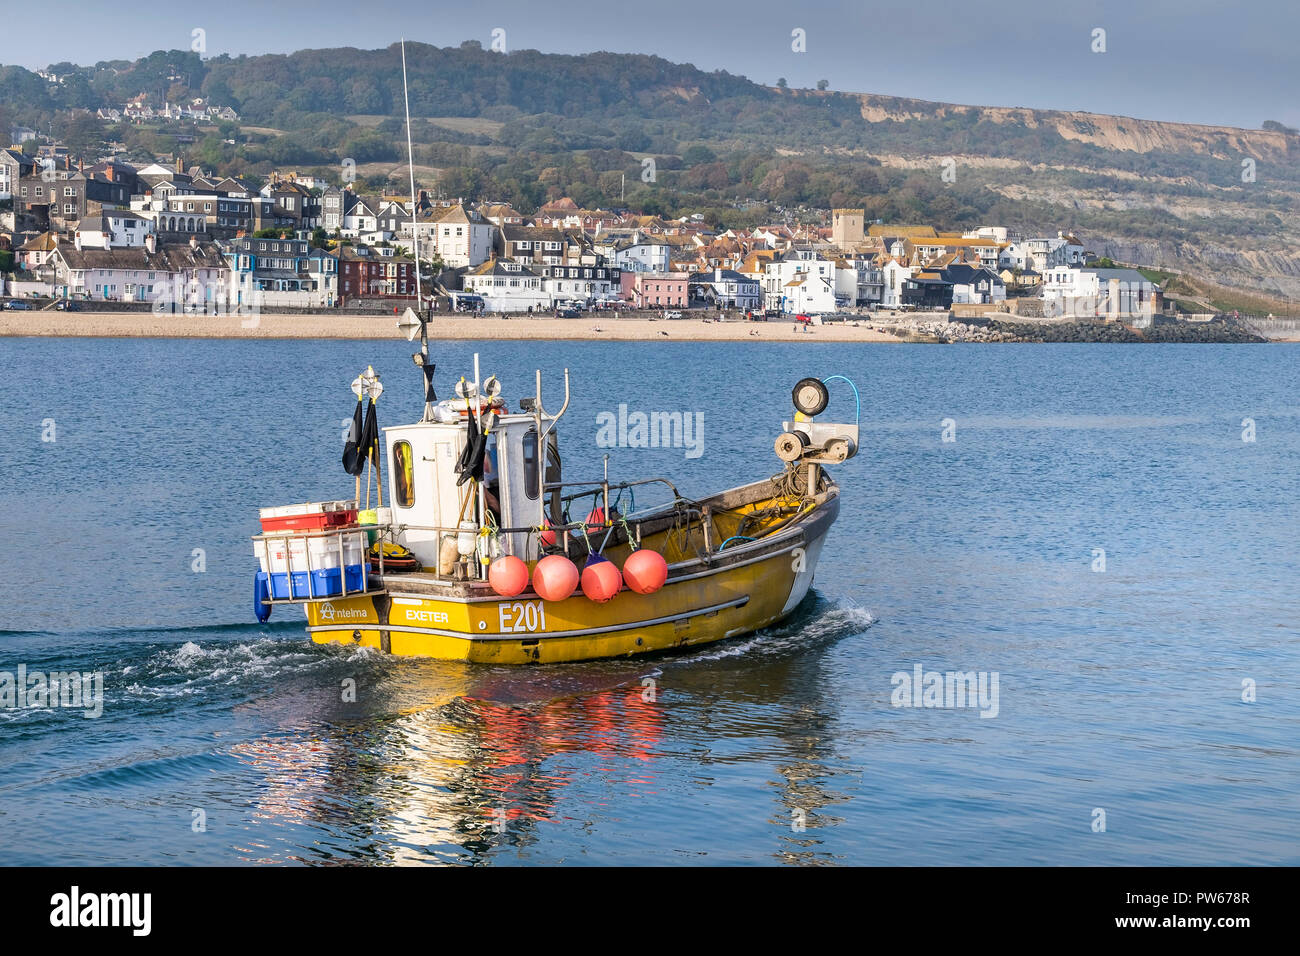 Ein kleines Fischerboot E201 verlassen Lyme Hafen in Lyme Regis in Dorset. Stockfoto